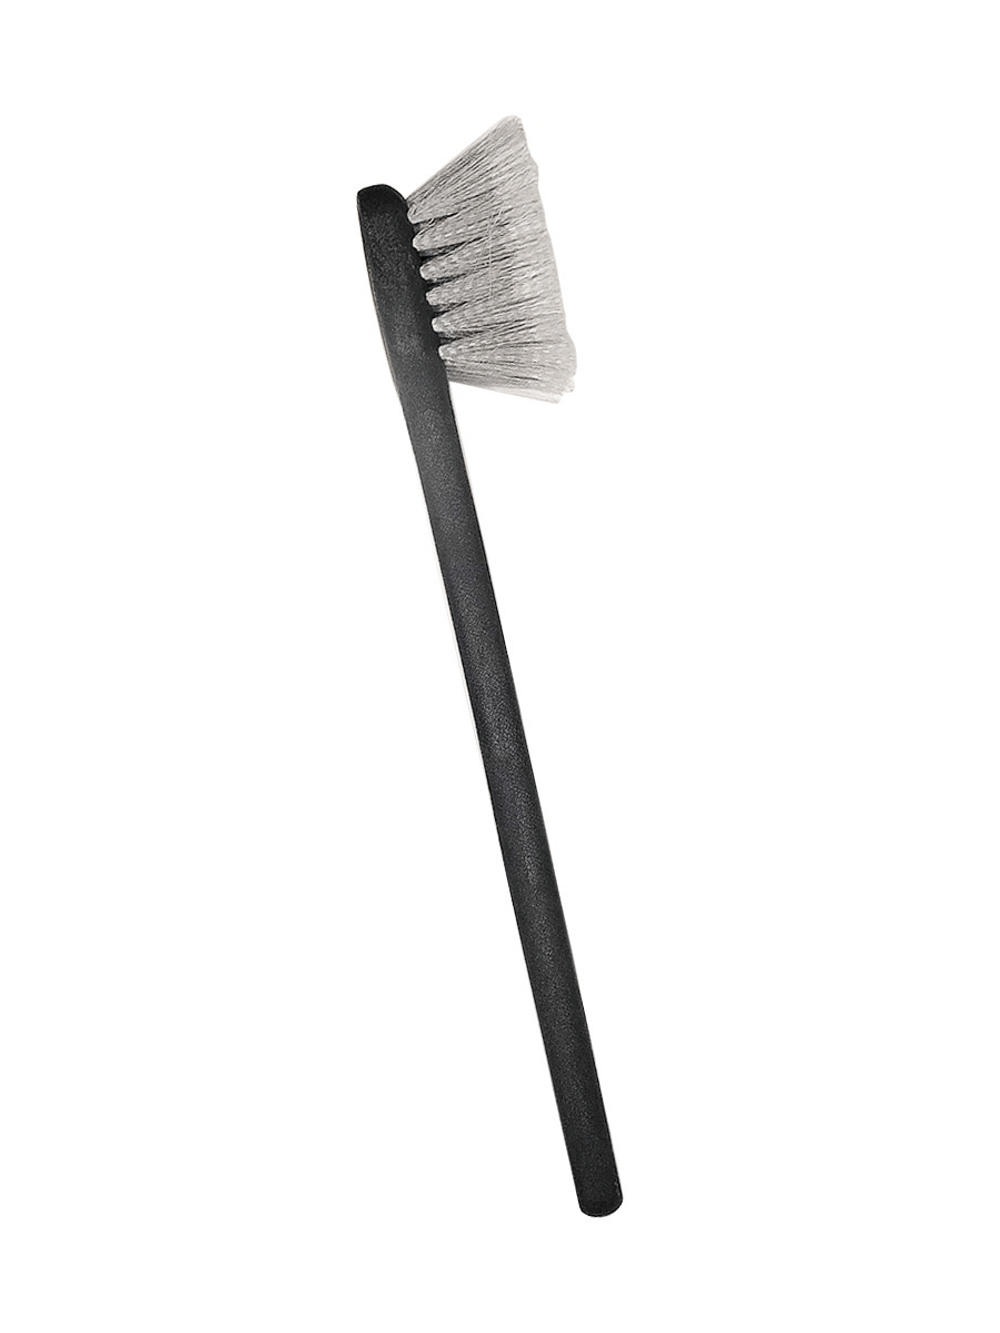 AutoMagic Super soft fender brush Большая щетка супер мягкой  щетиной с длинной ручкой(белая)